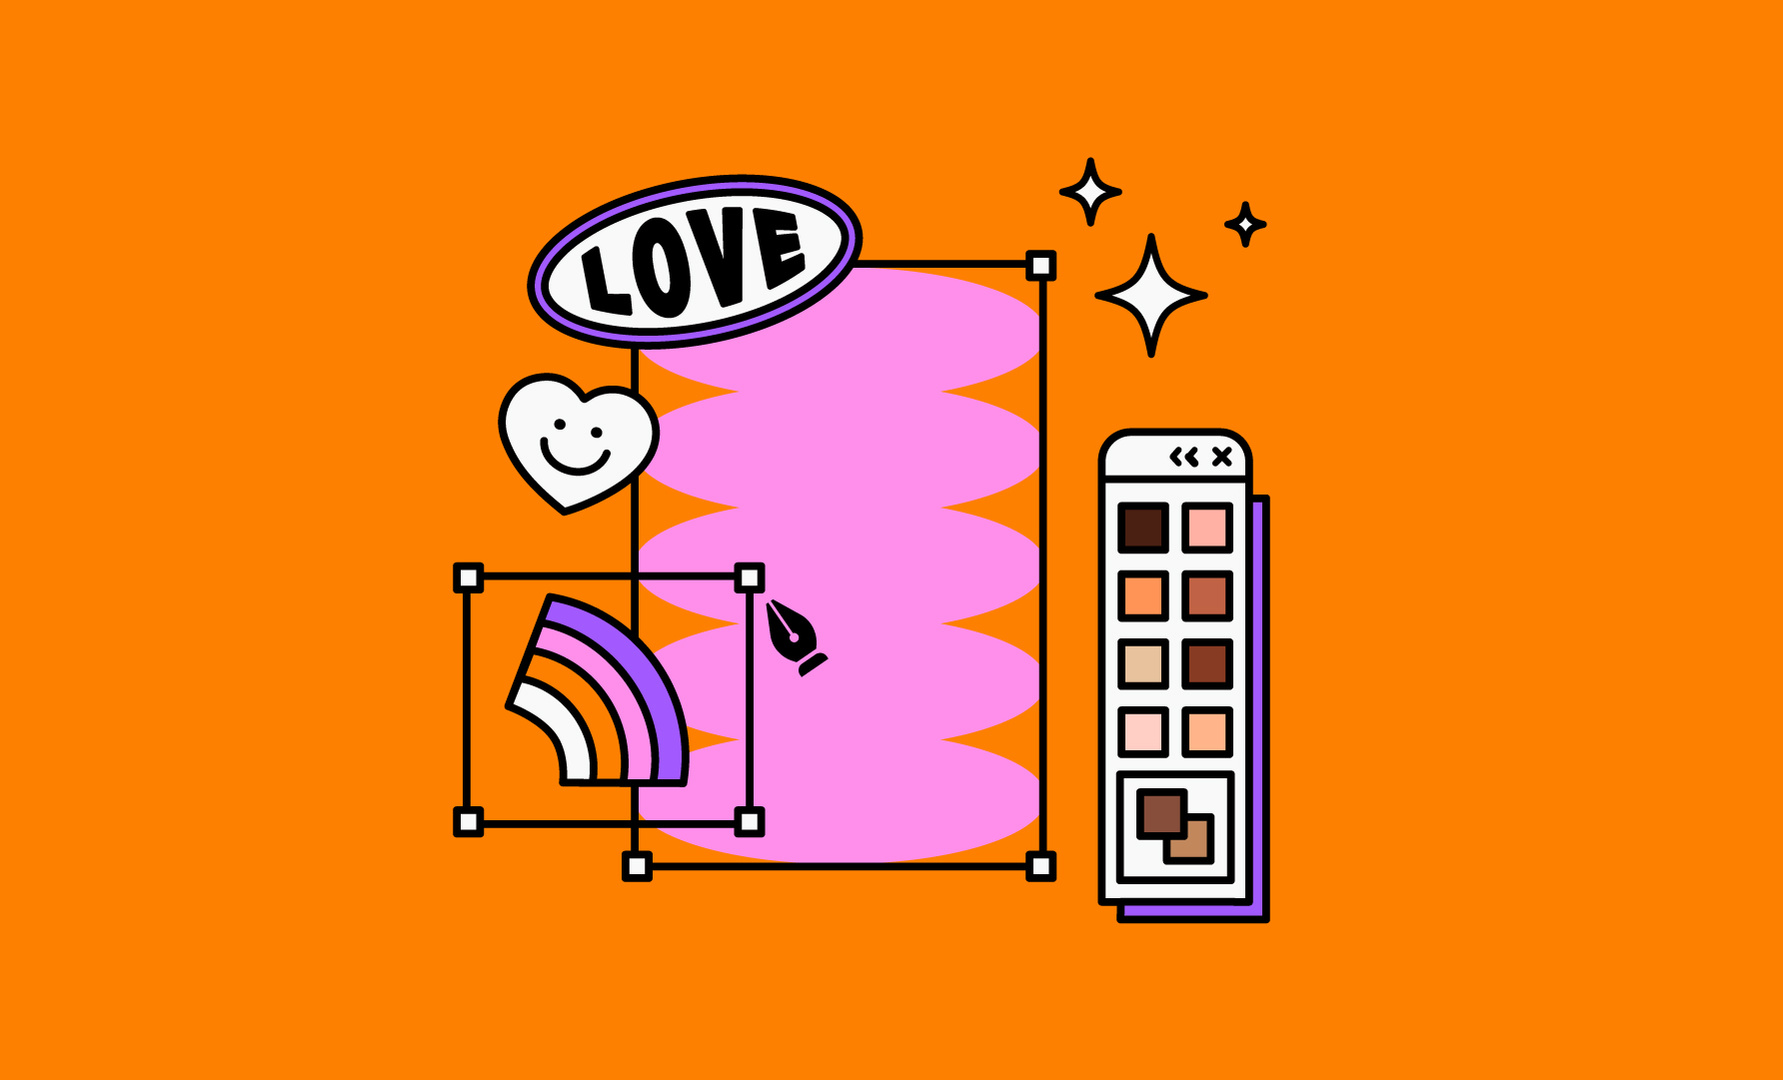 Vignette illustrée en flat design 2d avec des couleurs contrastées et pop, représentant les codes de la création d'images digitales et des symboles de l'amour, de la communauté LGBTQ+ ainsi qu'une représentation simplifiée des différentes teintes de peaux